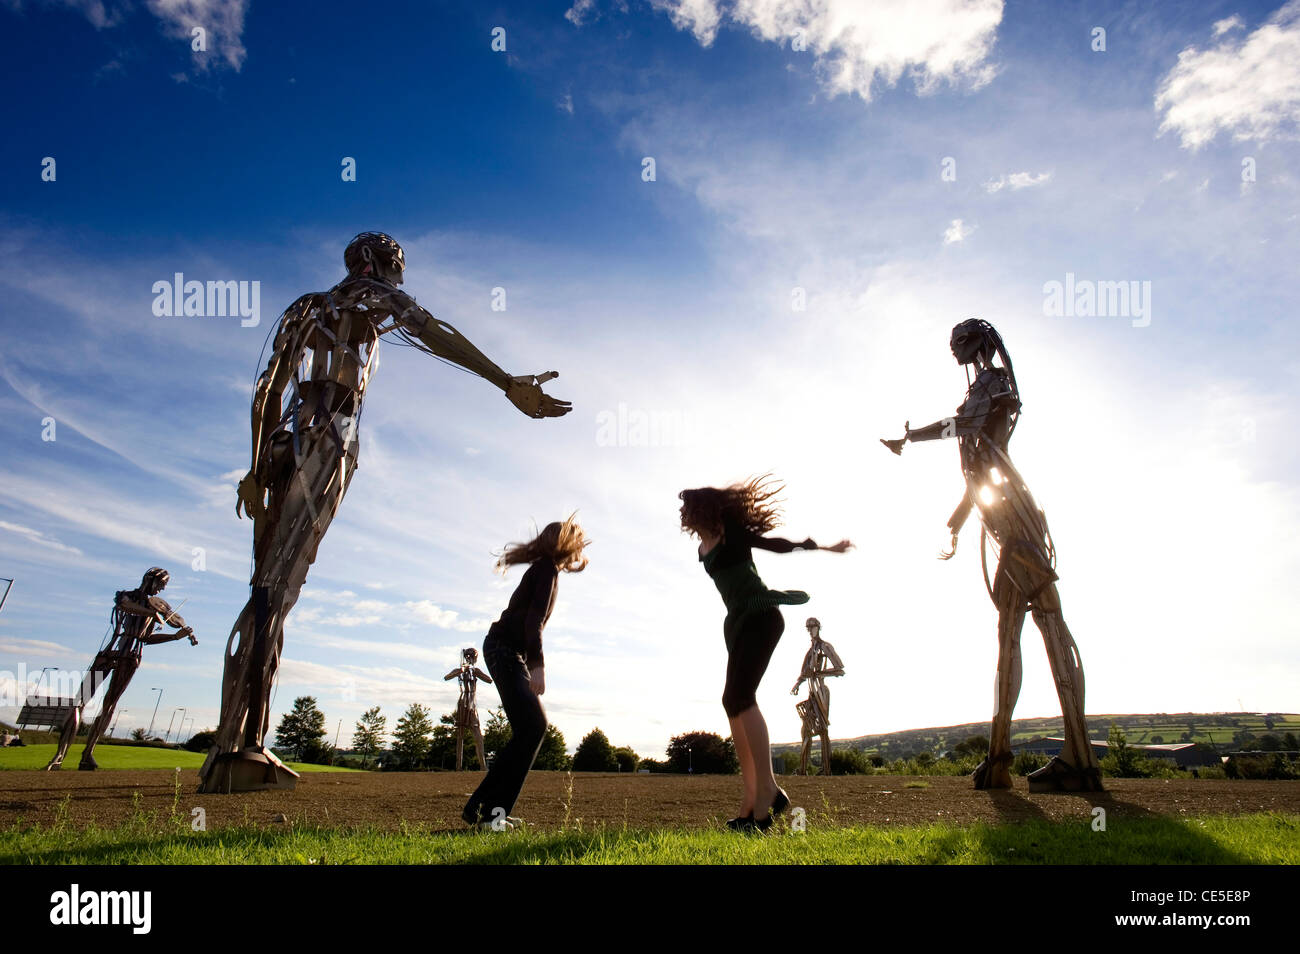 Deje que el baile comience la escultura, Strabane, de Derry, Irlanda del Norte Foto de stock